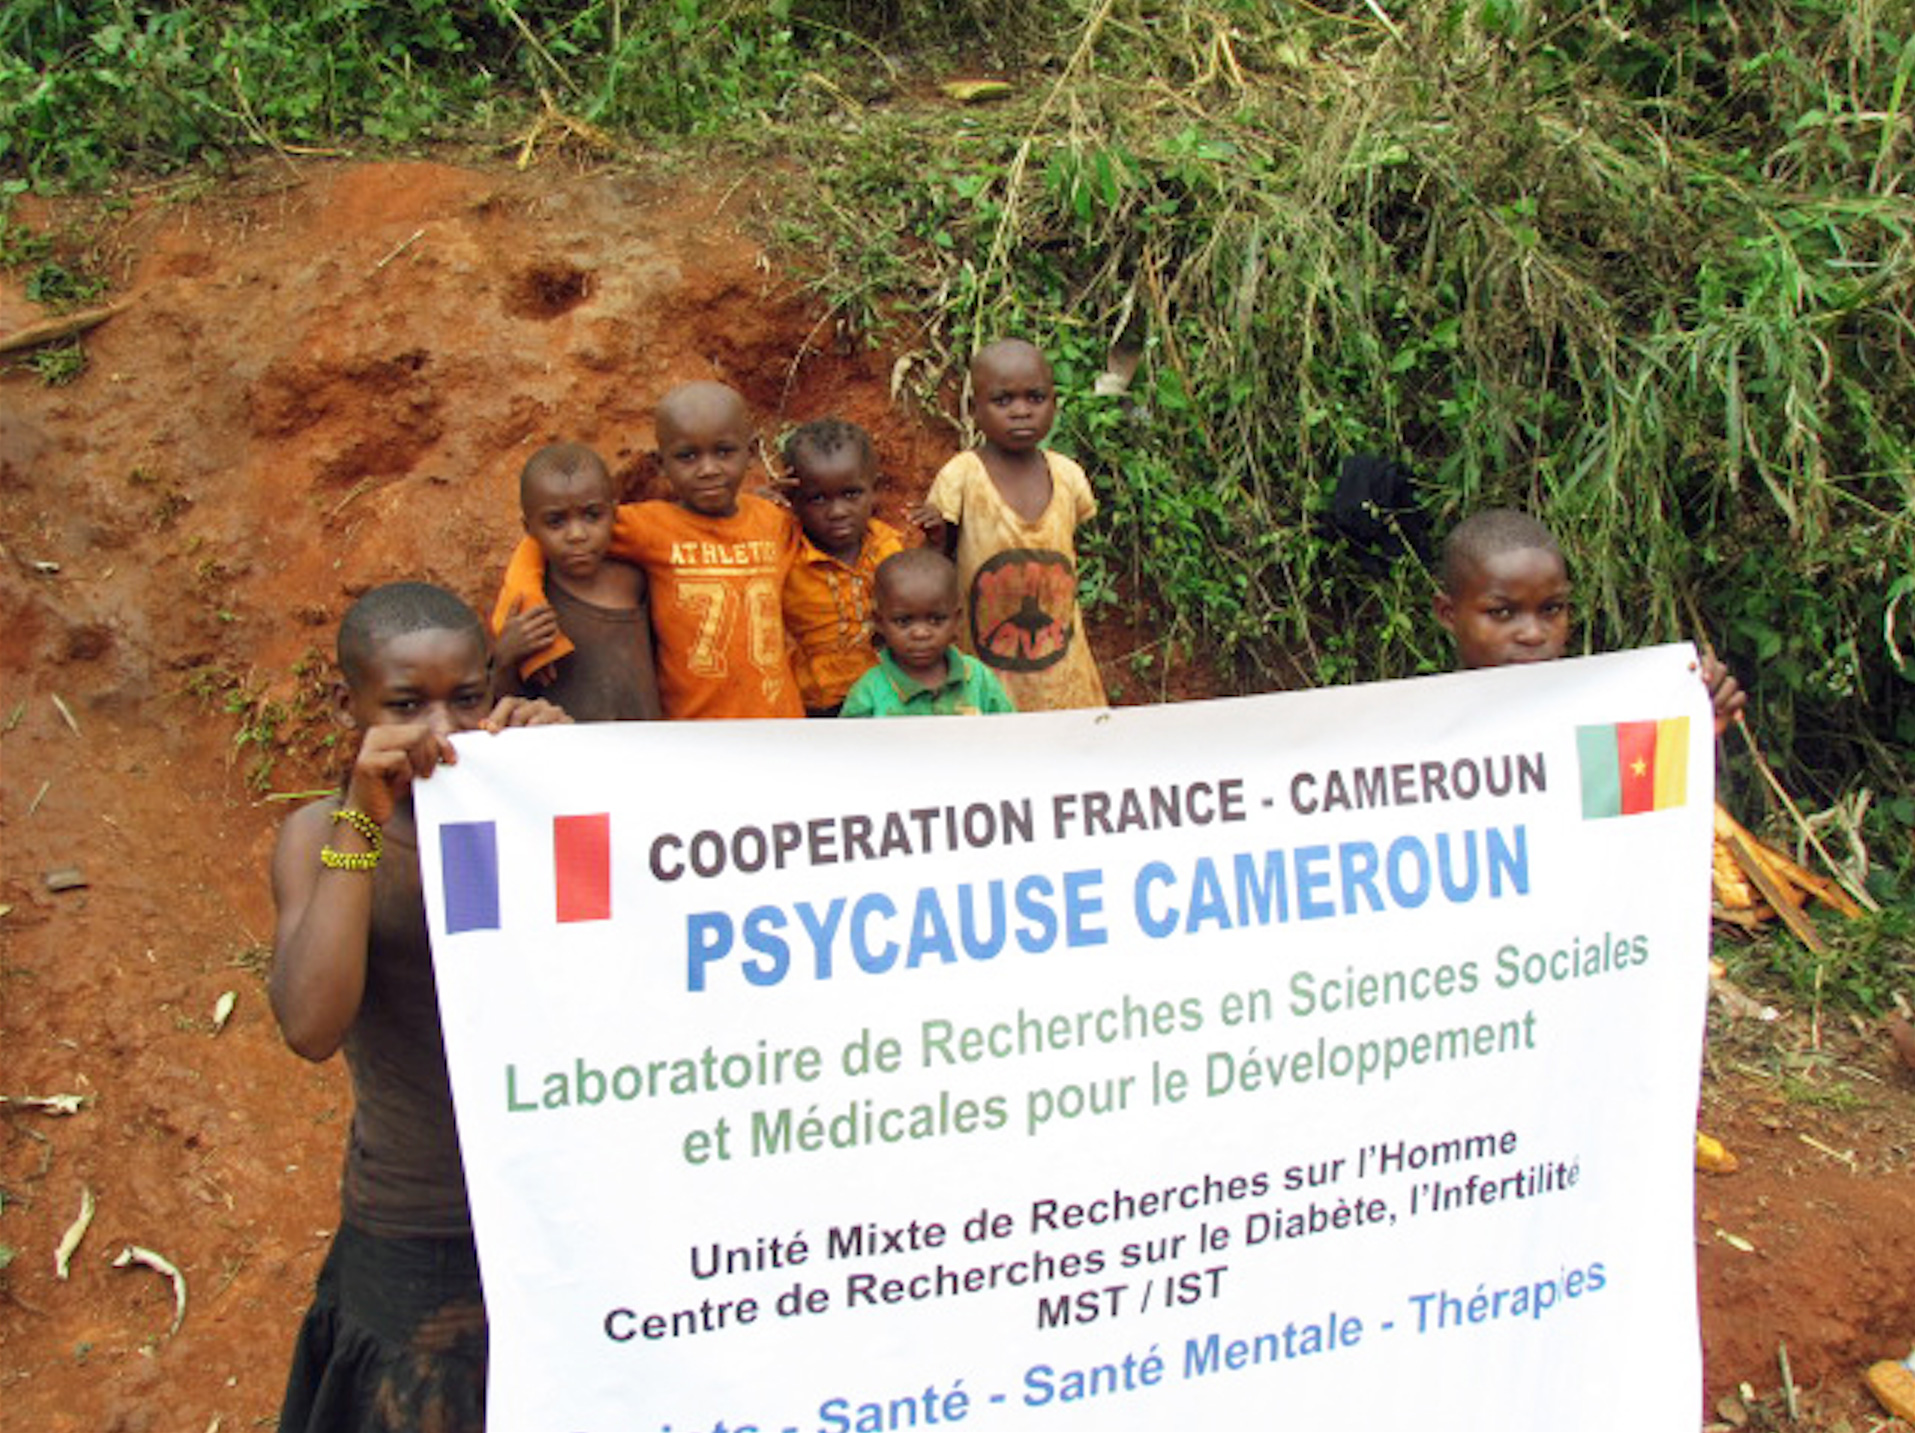 Psy Cause Cameroun : à propos d’une « plaque » France-Cameroun